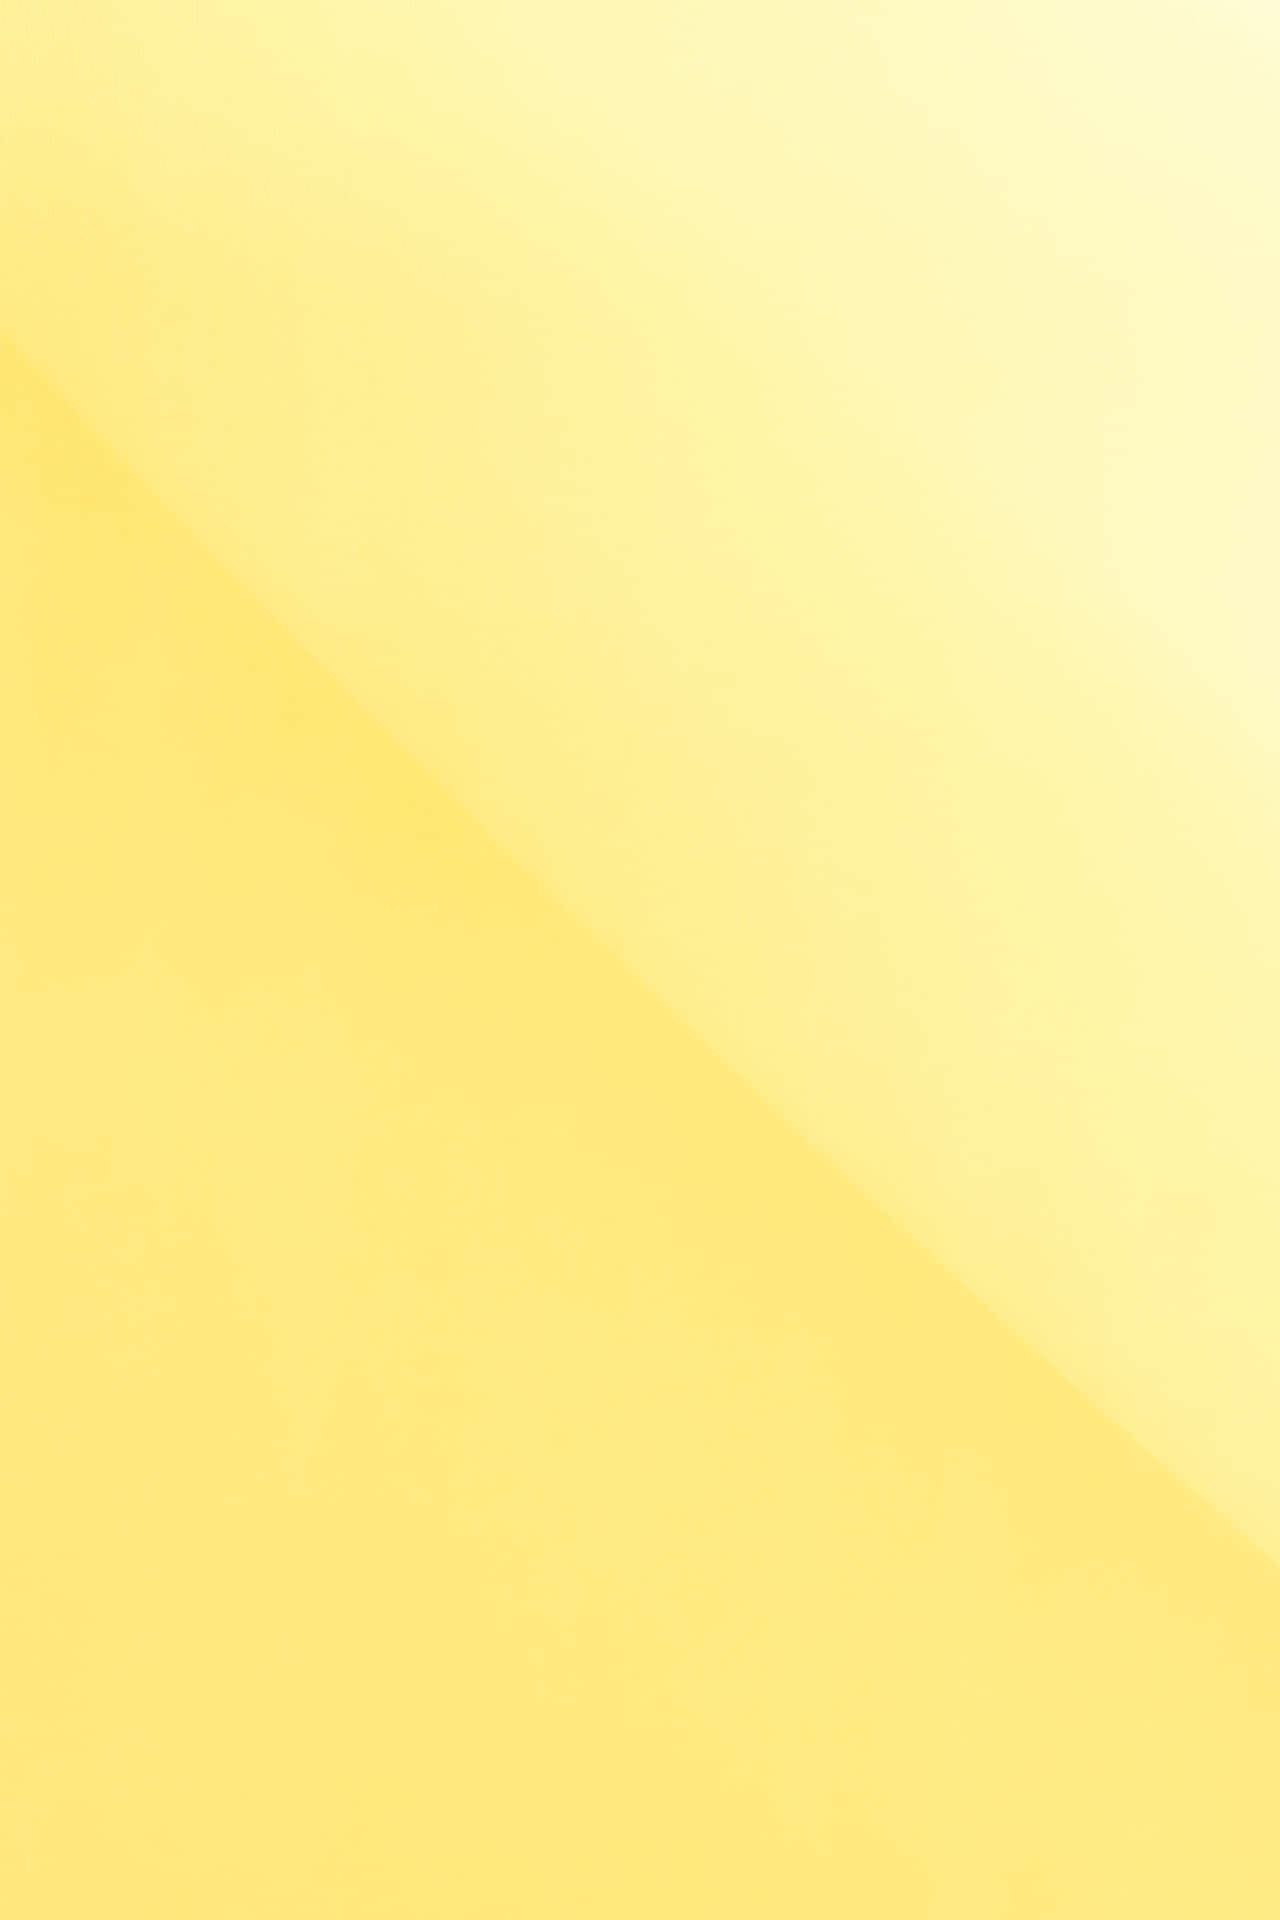 Unfondo Amarillo Con Un Patrón De Rayas Blancas Fondo de pantalla